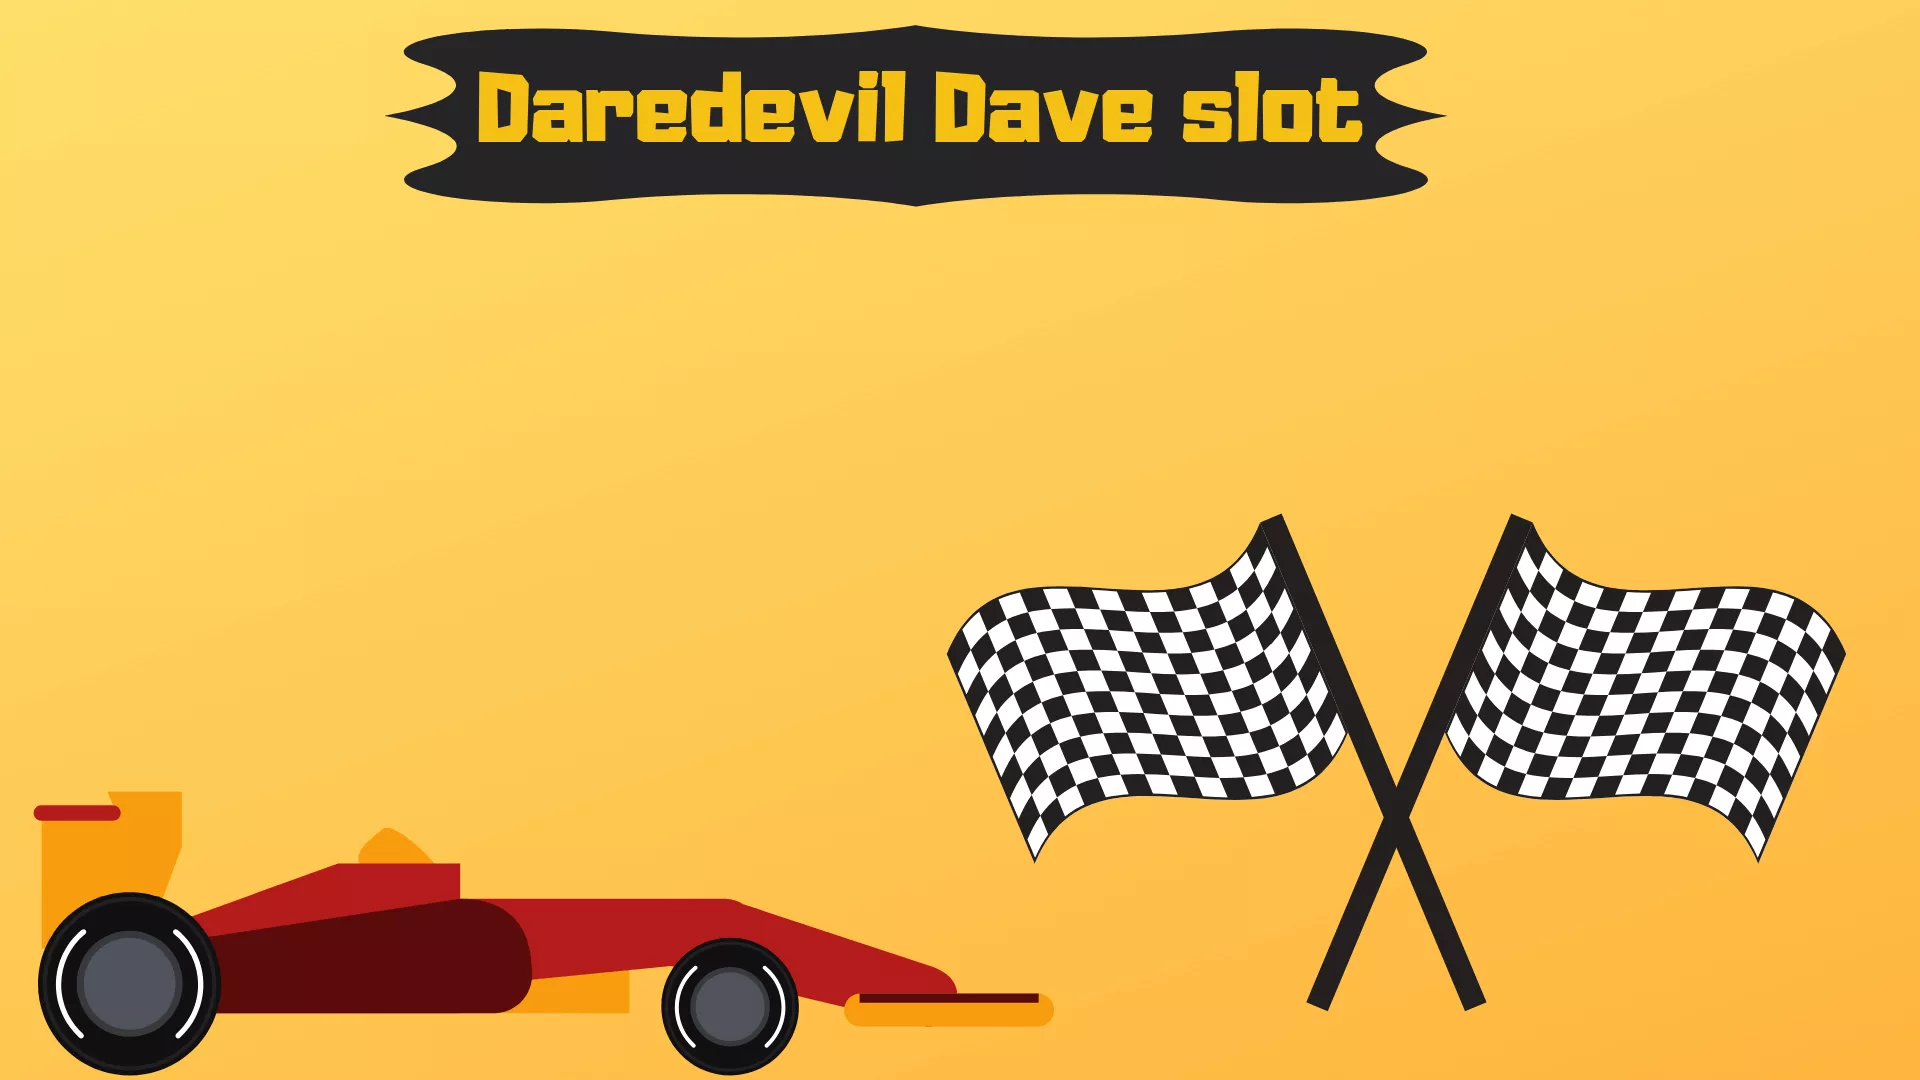 Daredevil Dave slot